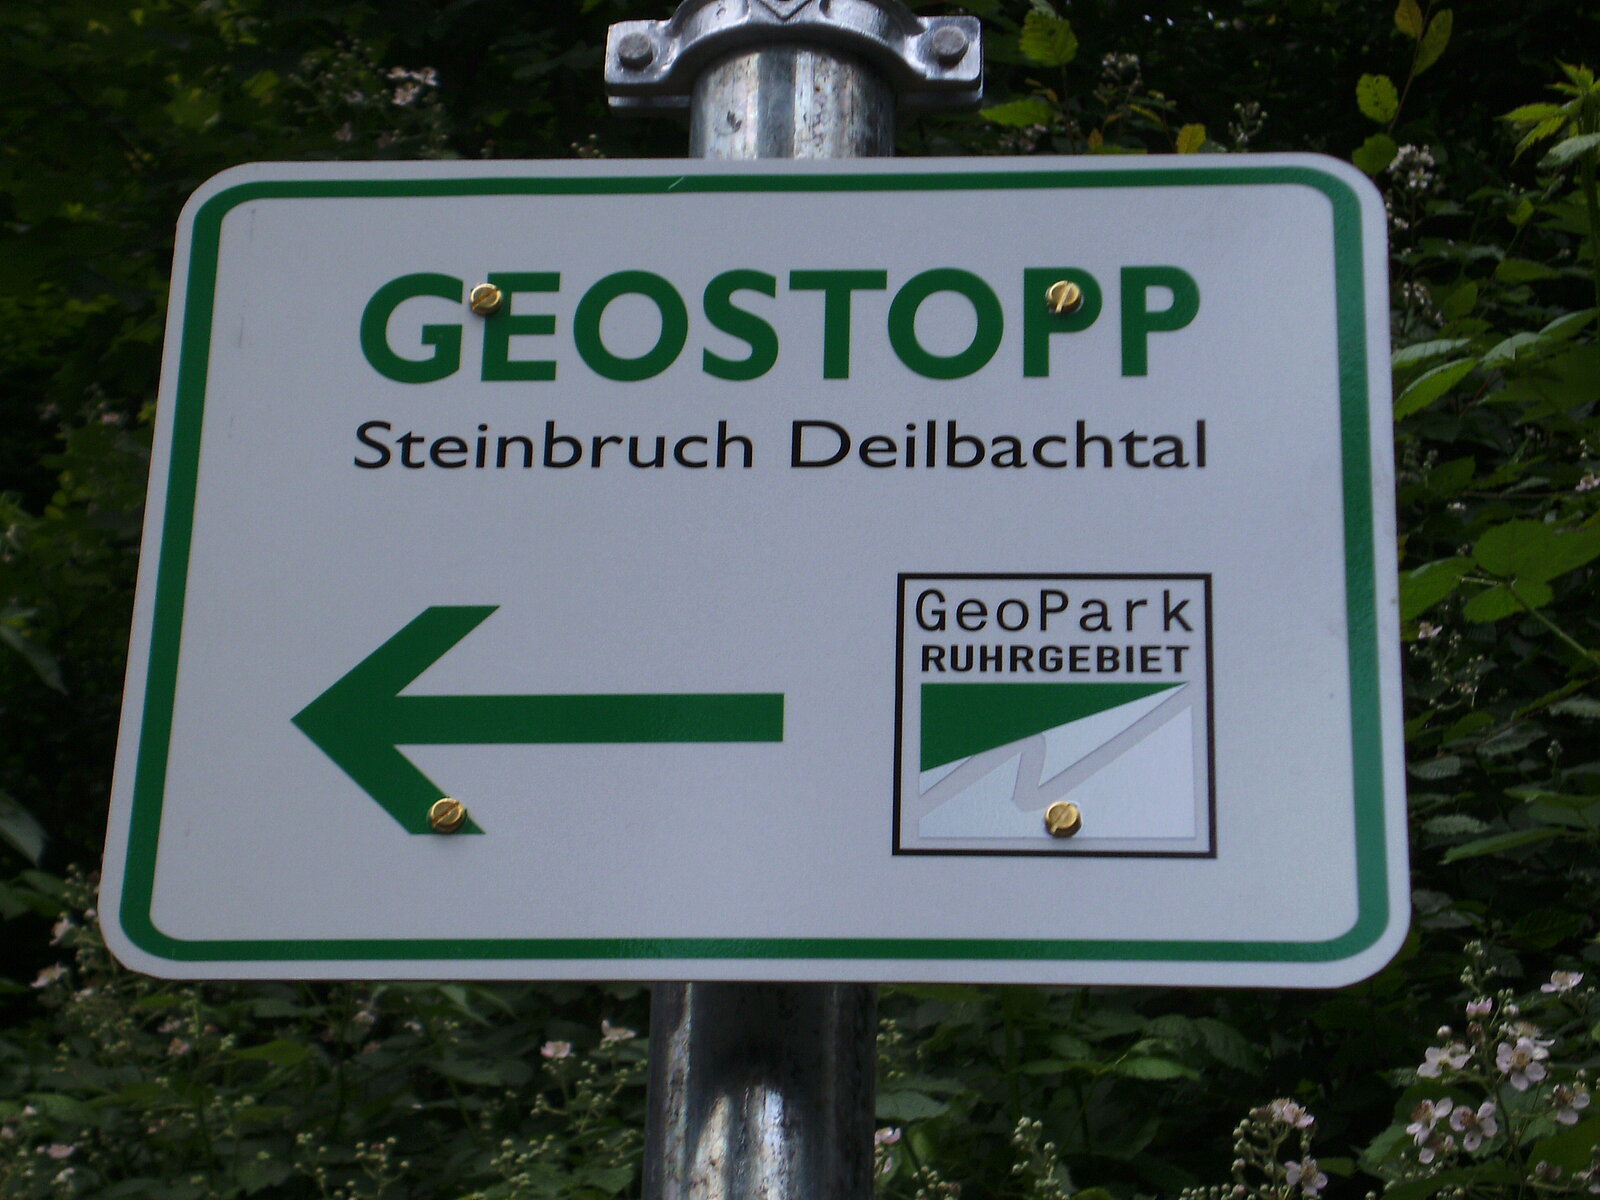 Schild mit Aufschrift "Geostopp Steinbruch Deilbachtal" und GeoPark-Logeo